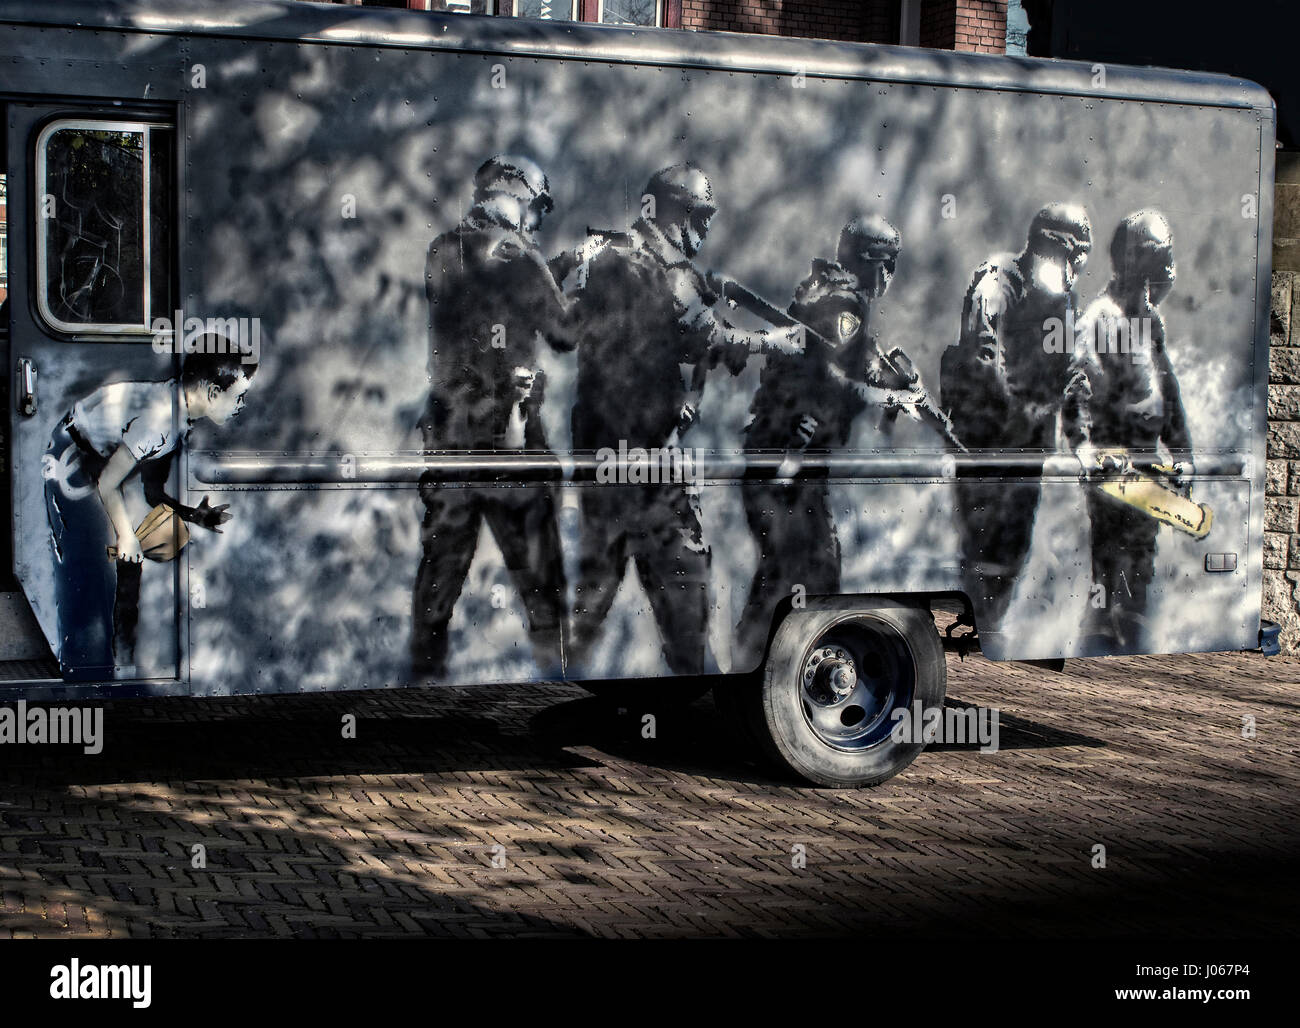 Street art Banksy sur une camionnette à Amsterdam Pays-Bas Banque D'Images